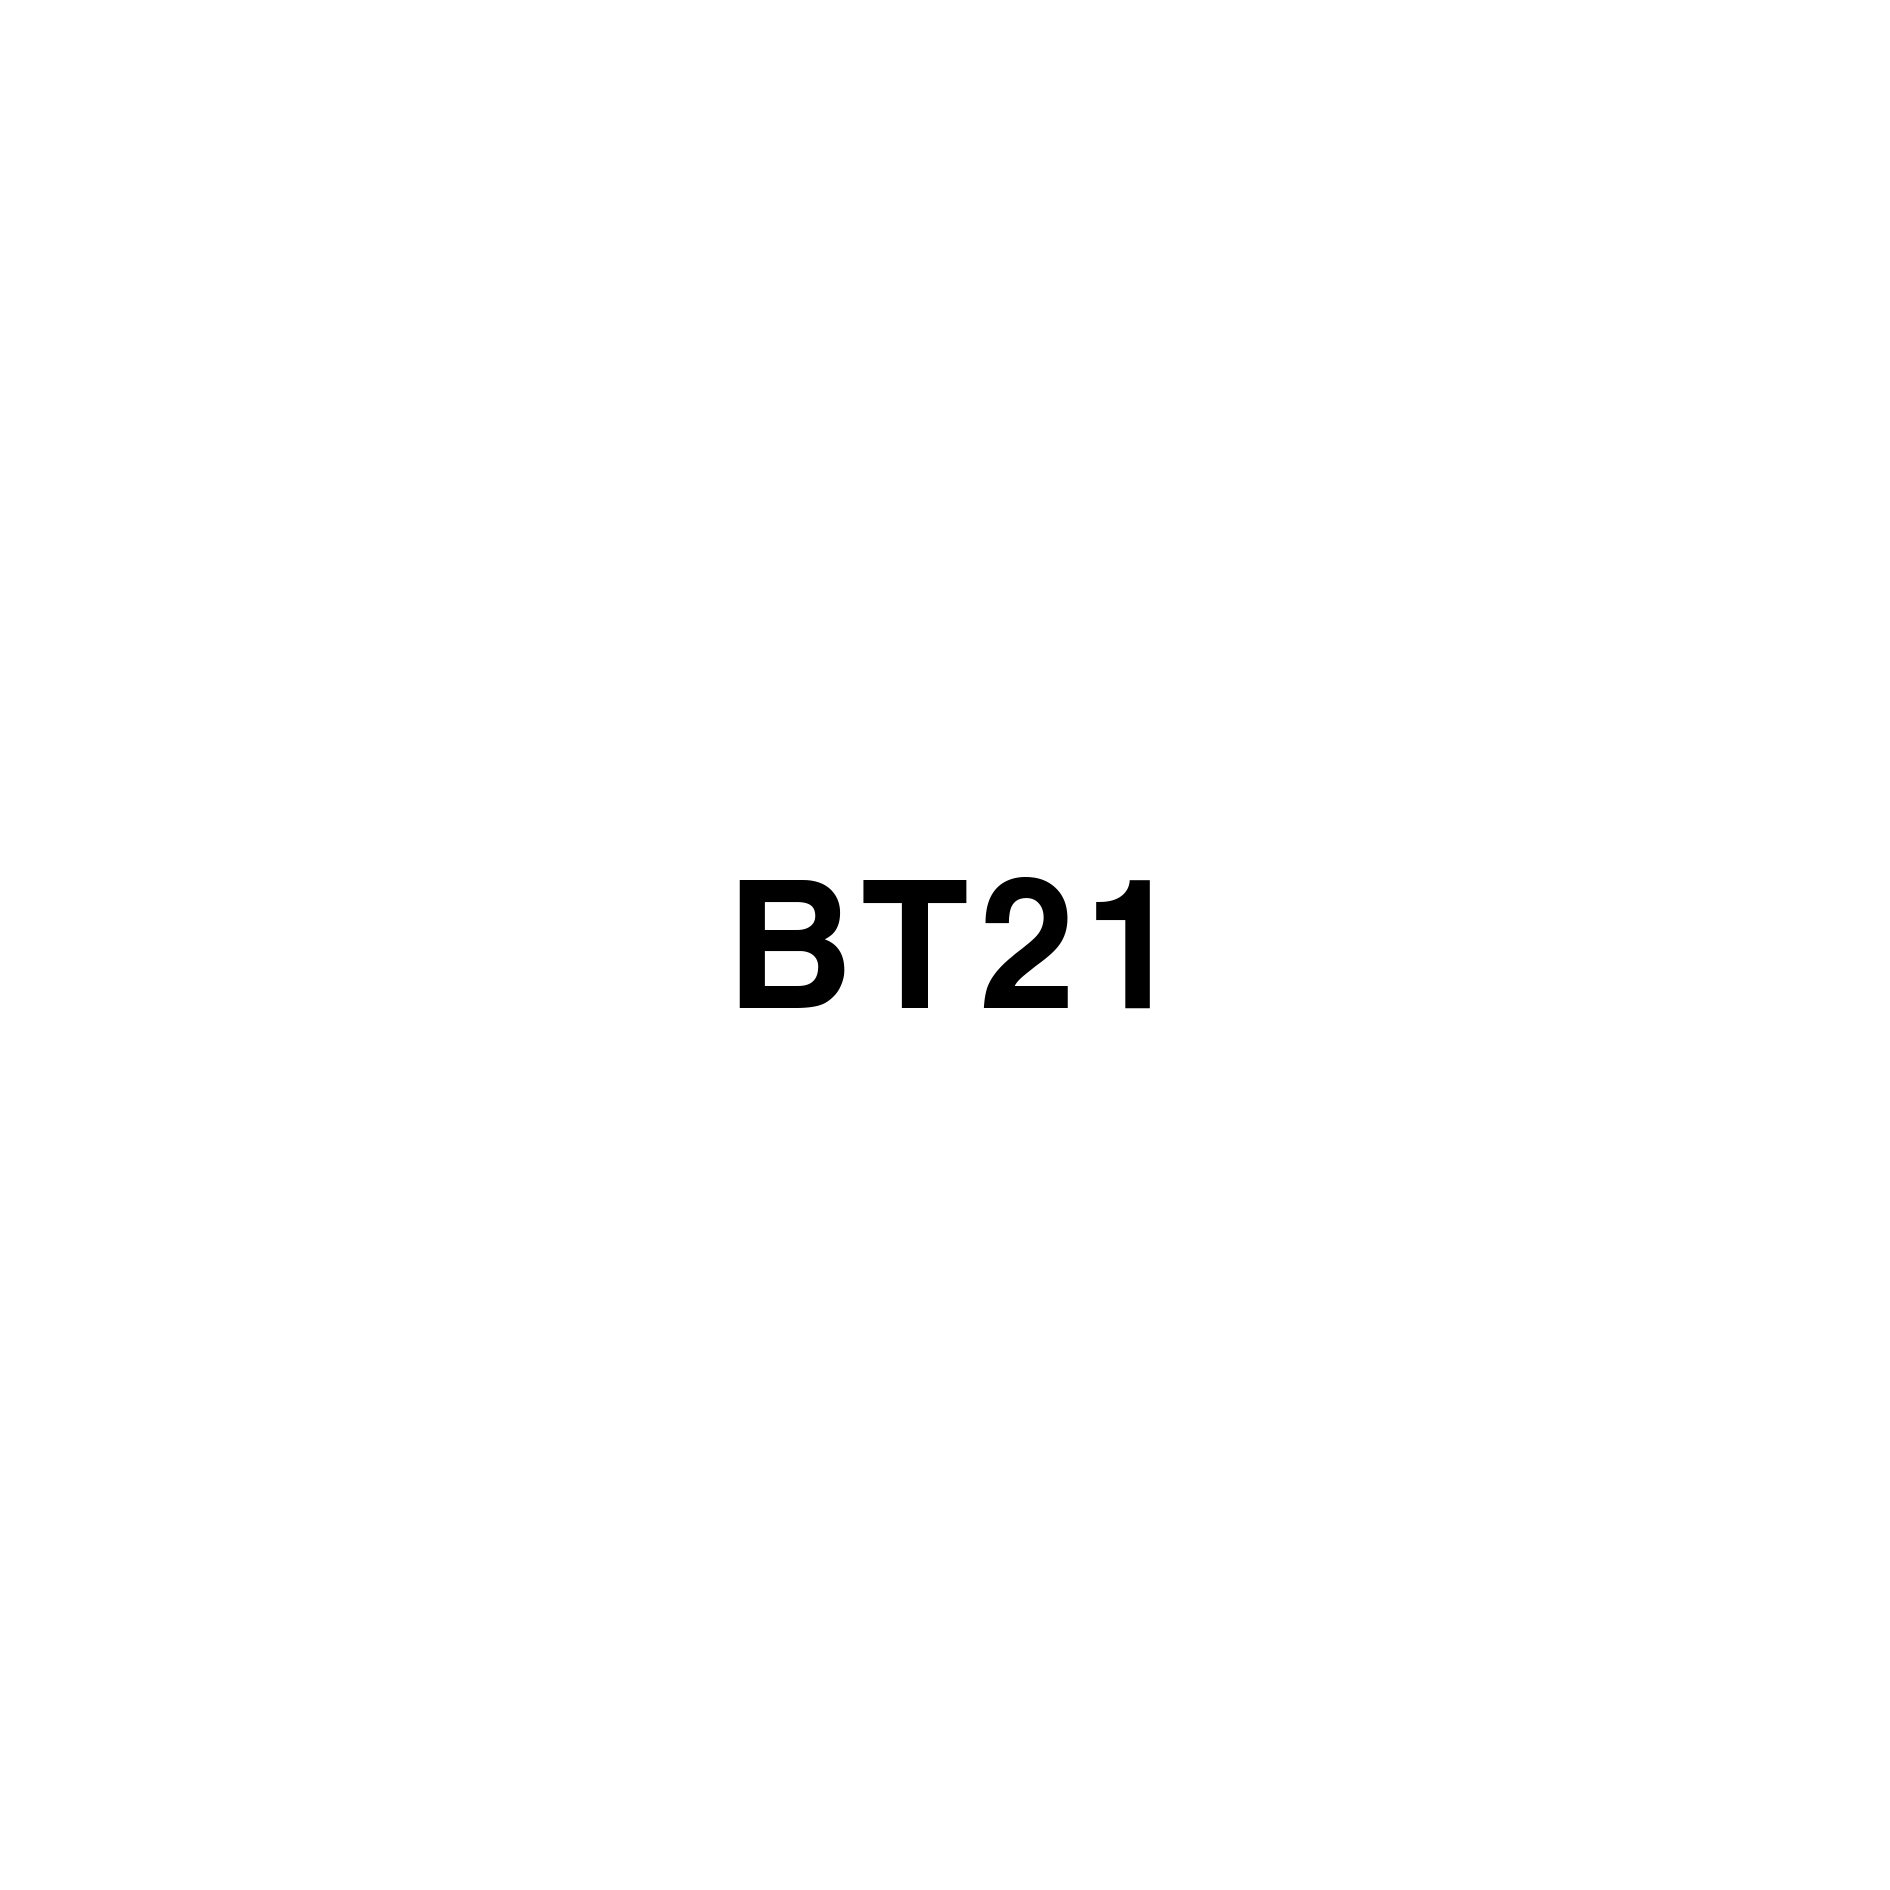 BT21